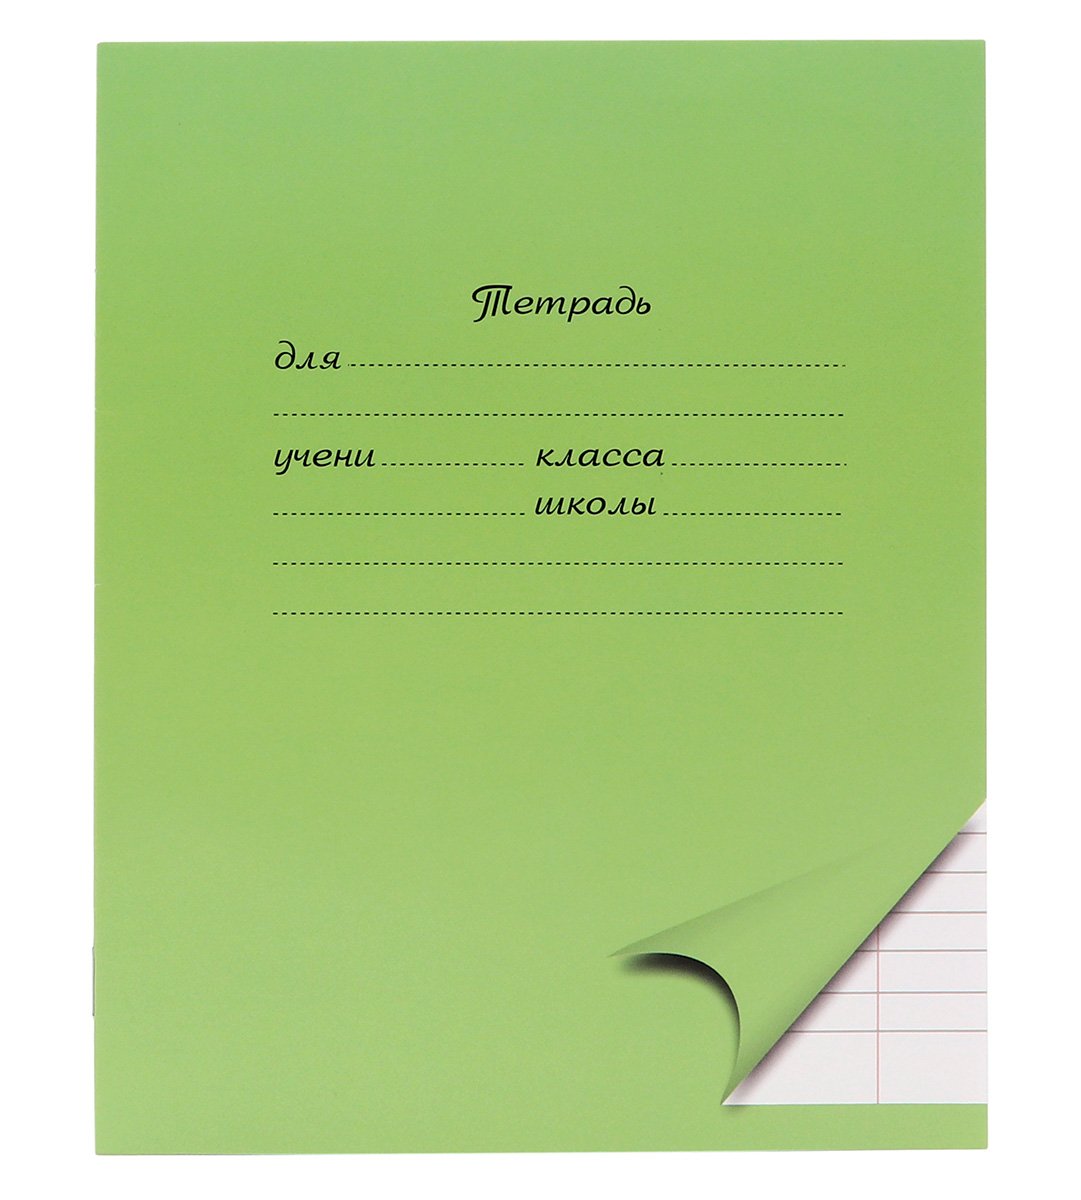 Тетрадь школьная ПандаРог предназначена для учеников начальных классов, подходит для ежедневных и контрольных работ. Имеет зеленую однотонную обложку с разметкой для заполнения данных об ученике и учебном заведении. Внутренний блок из офсетной бумаги на двух скрепках включает в себя 12 листов в линейку с полями. Четвертая страница обложки оснащена алфавитом строчных и прописных письменных букв для быстрого освоения правил правописания. Формат А5.